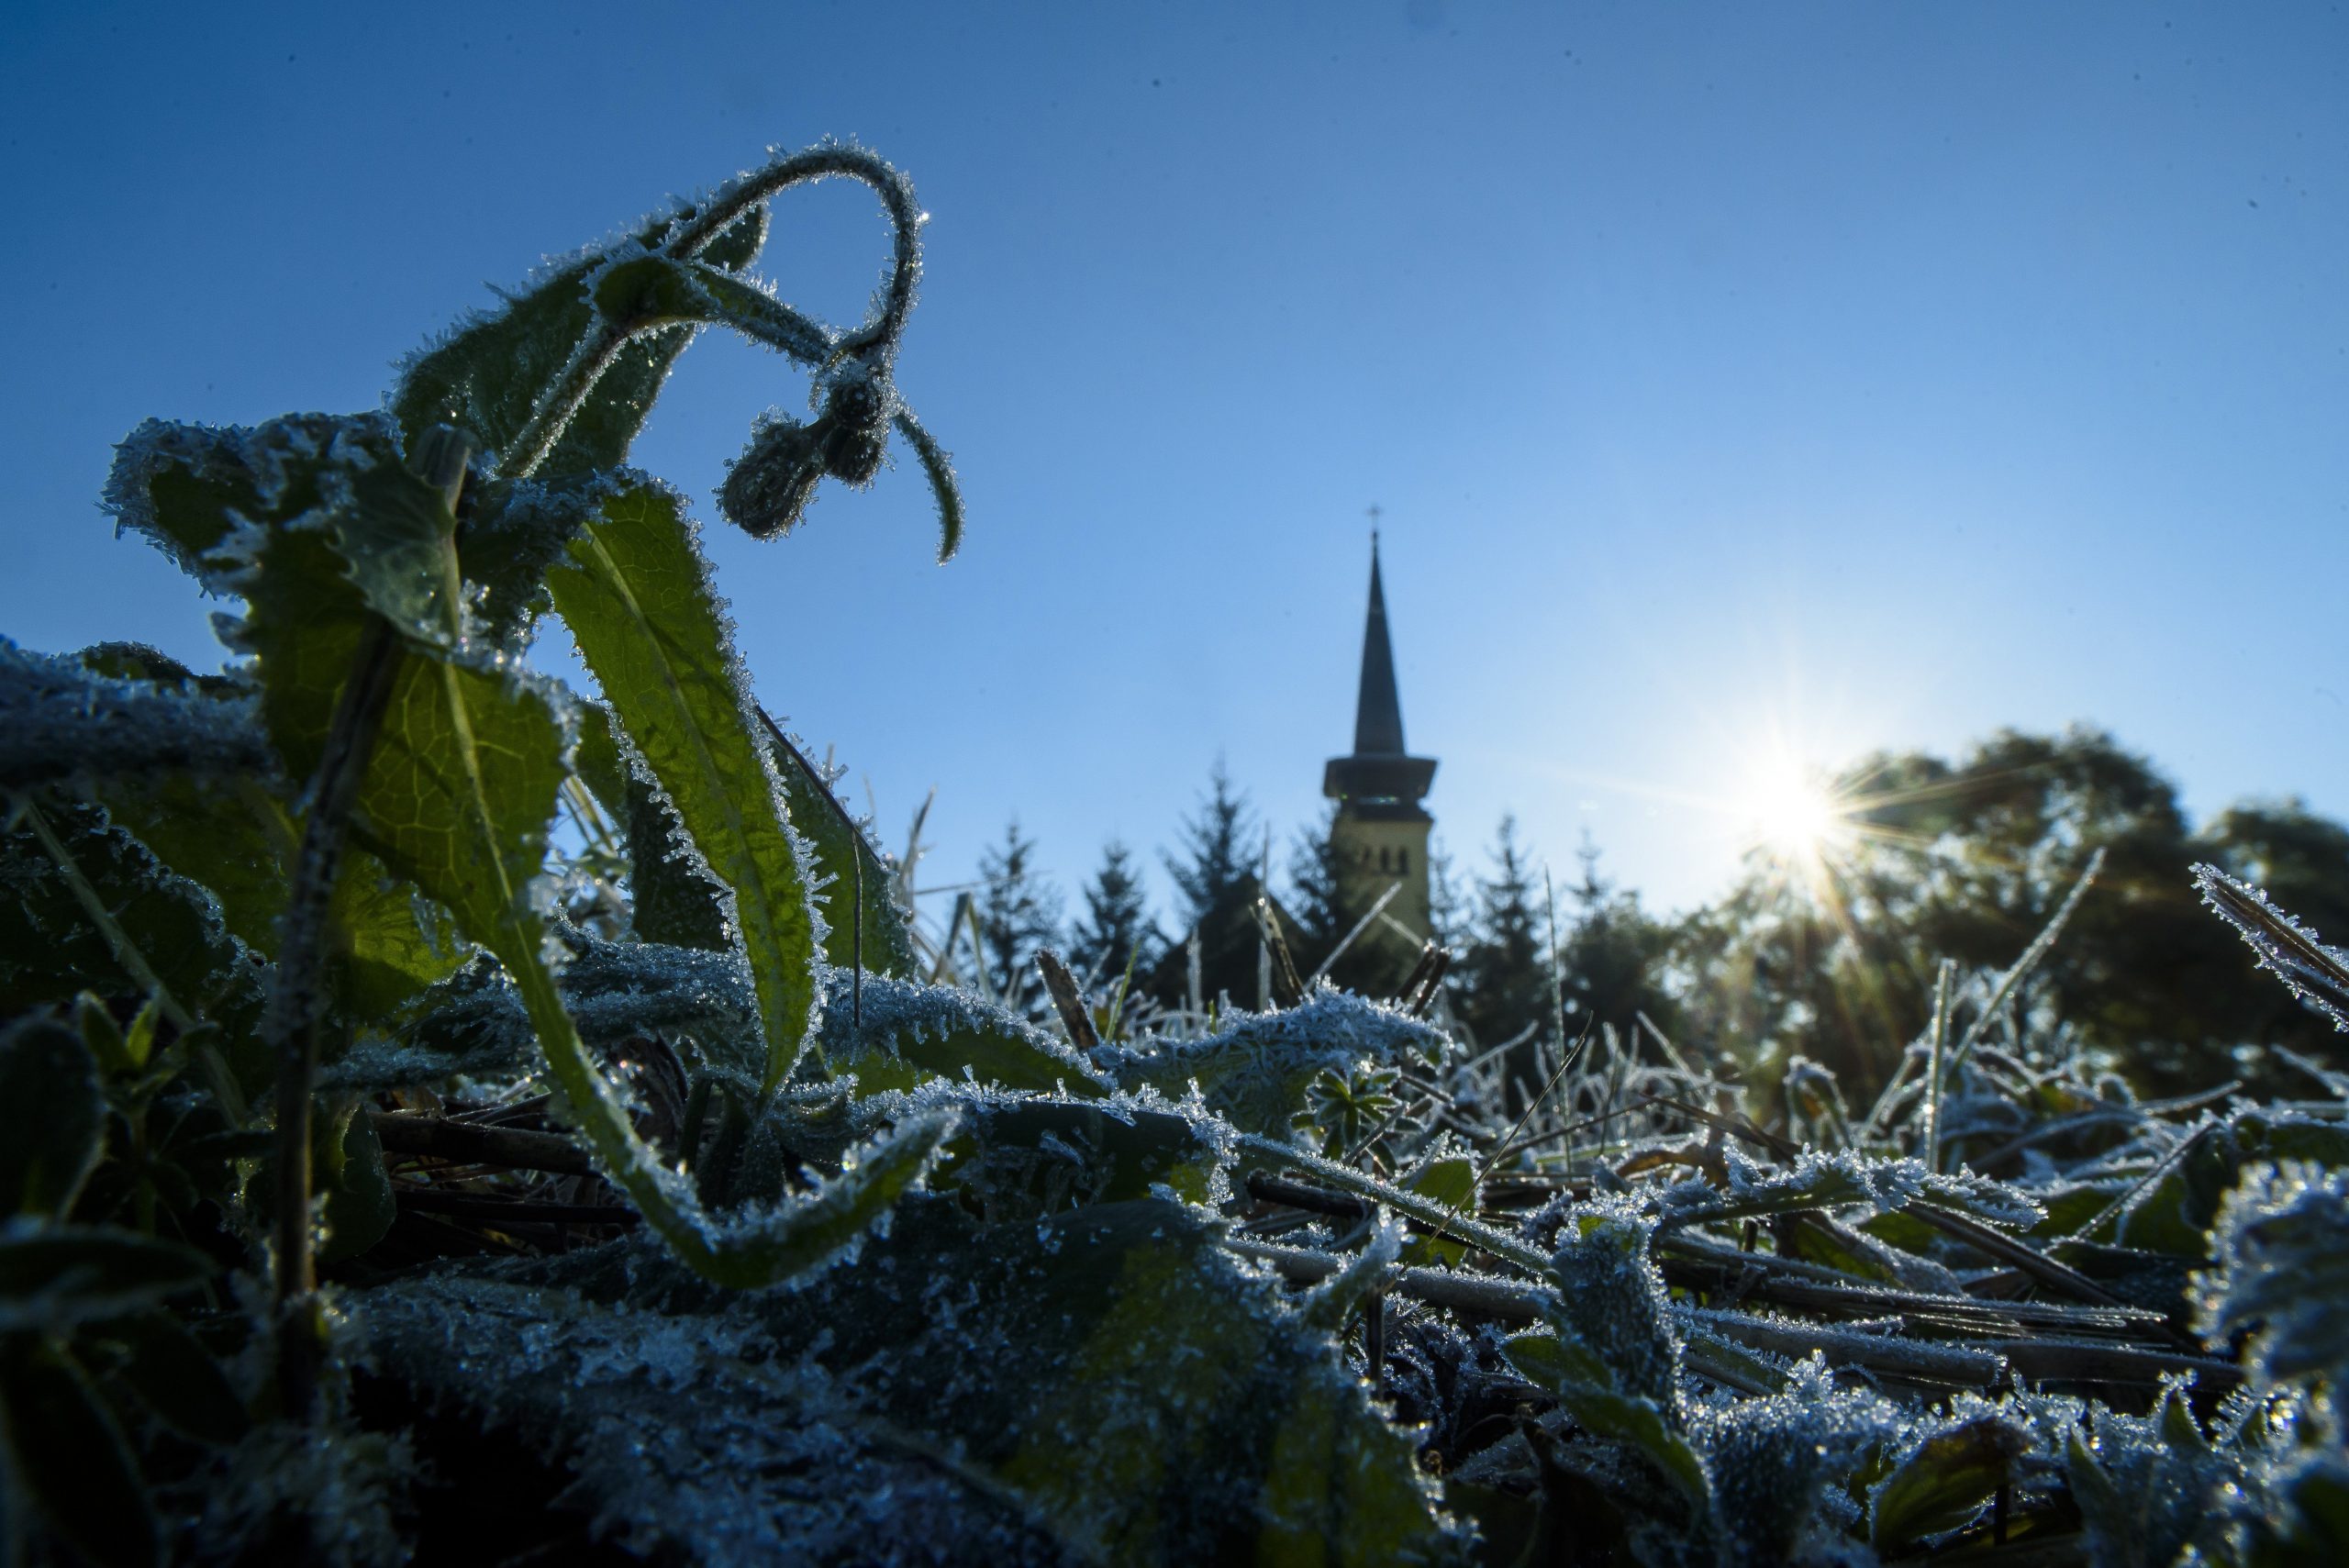 Das kälteste Dorf Ungarns erwartet Besucher mit einem besonderen Kältefestival